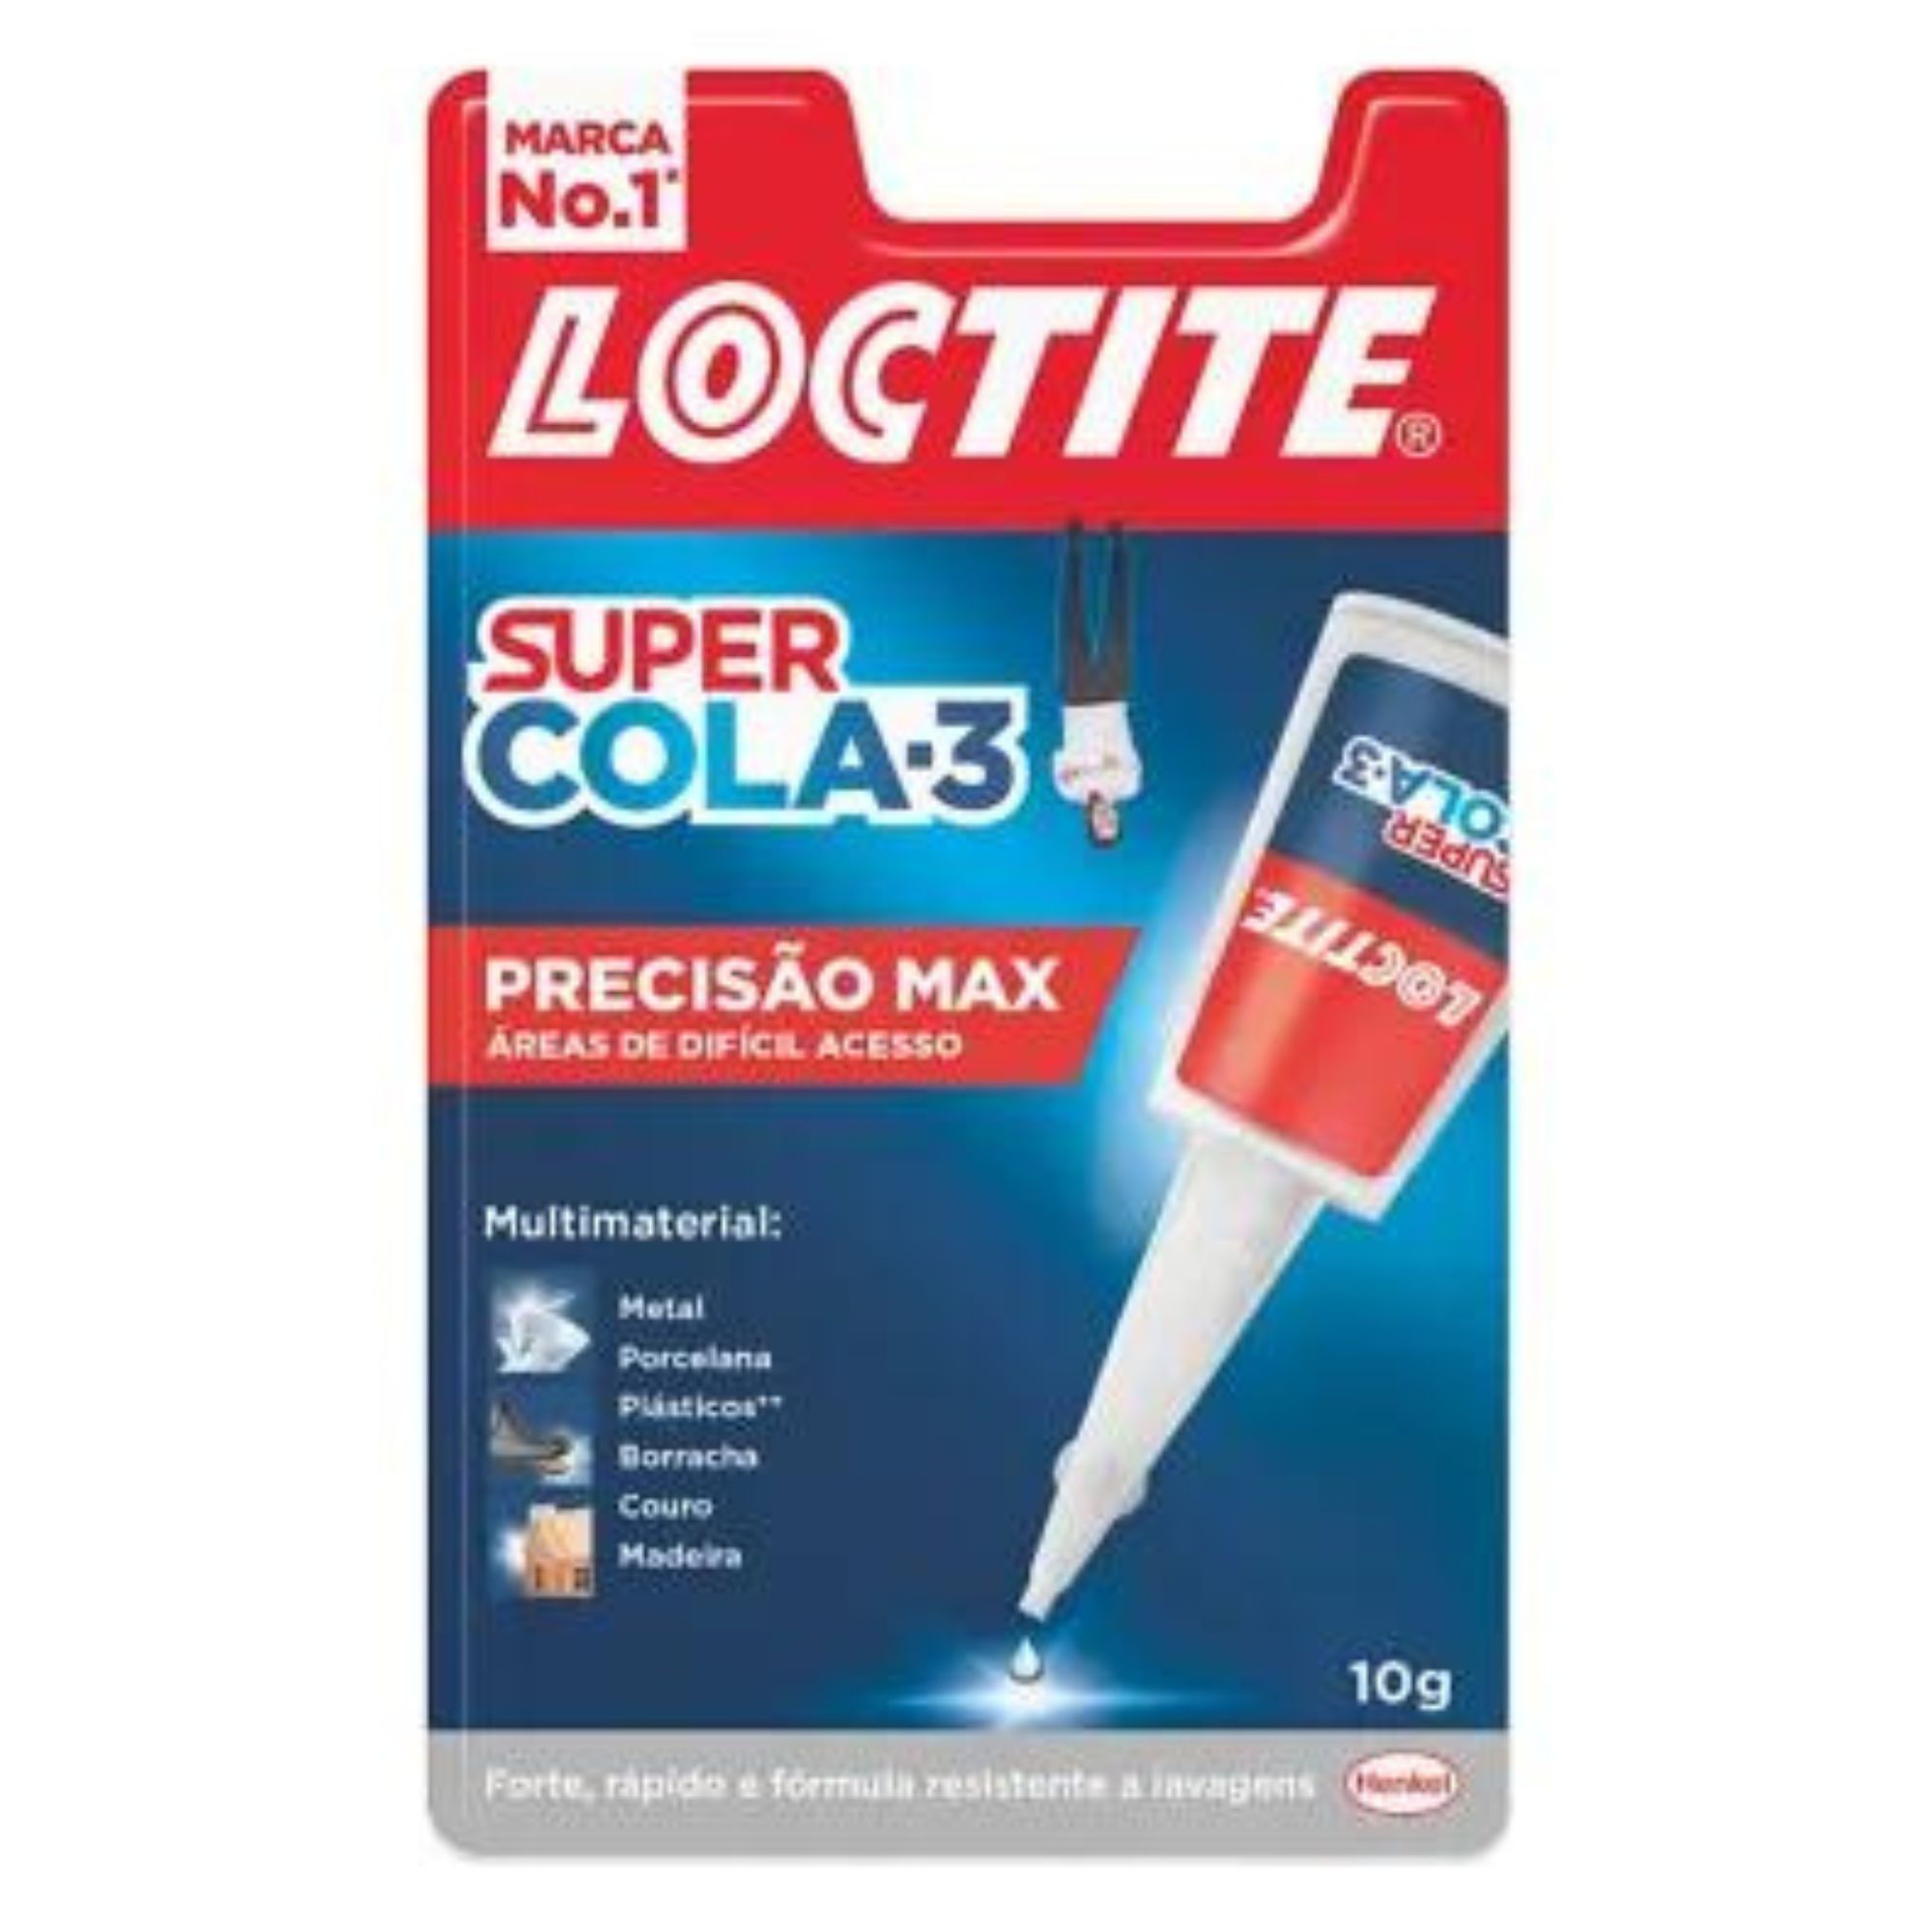 LOCTITE SUPER COLA 3 - 10g MAX PRECISION BLISTER